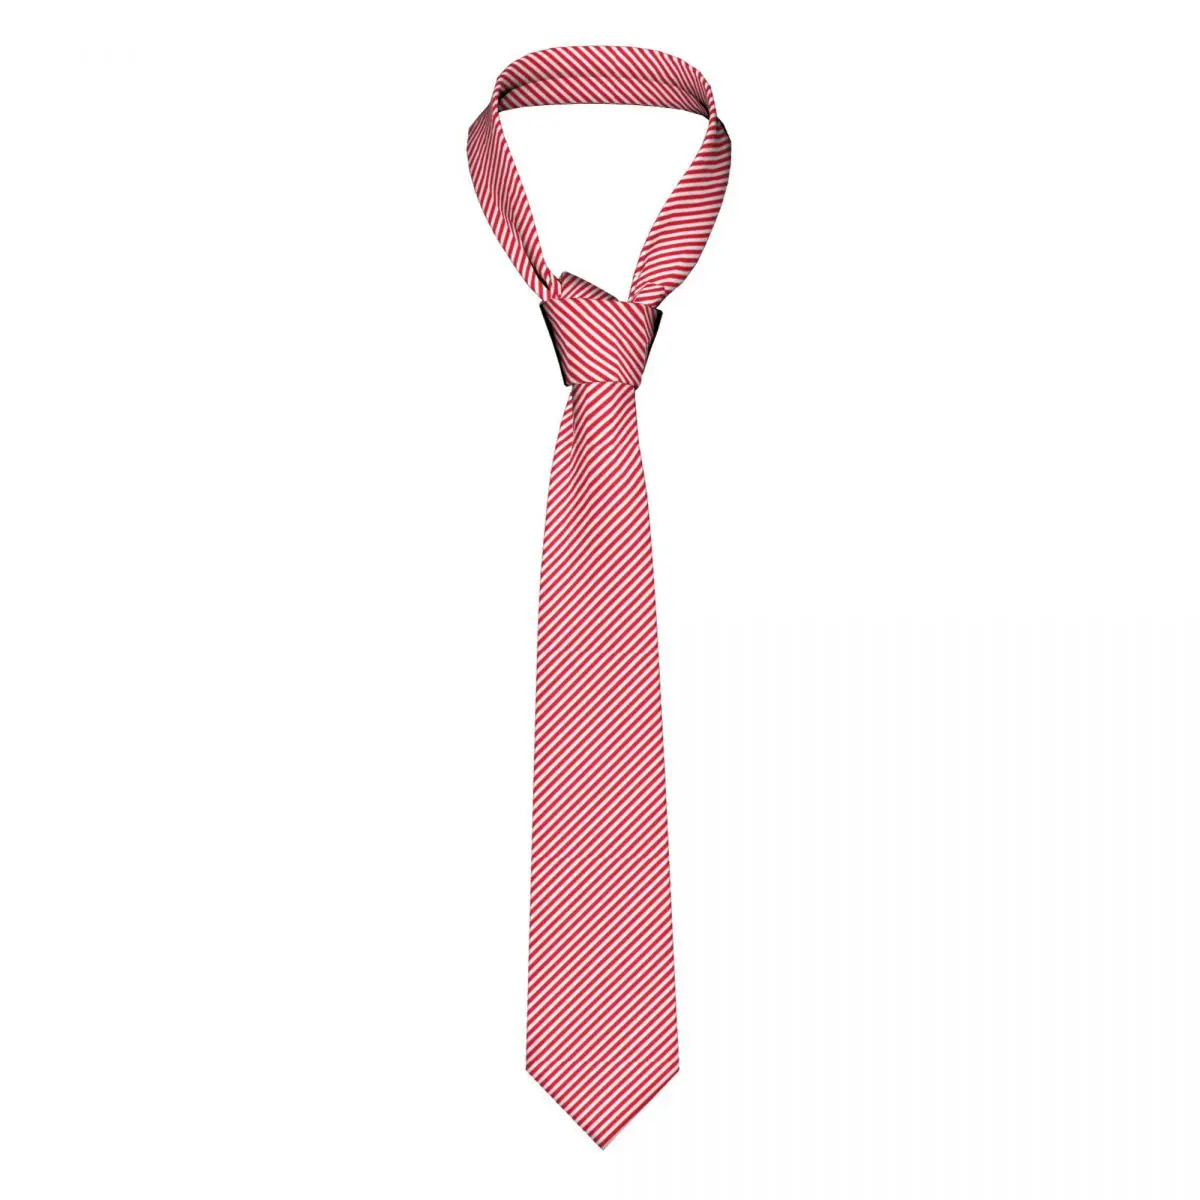 

Красный белый галстук в диагональную полоску красные полосы Рождественская рубашка эльфа винтажные галстуки на шею деловой галстук из полиэстера шелка подарок мужской галстук